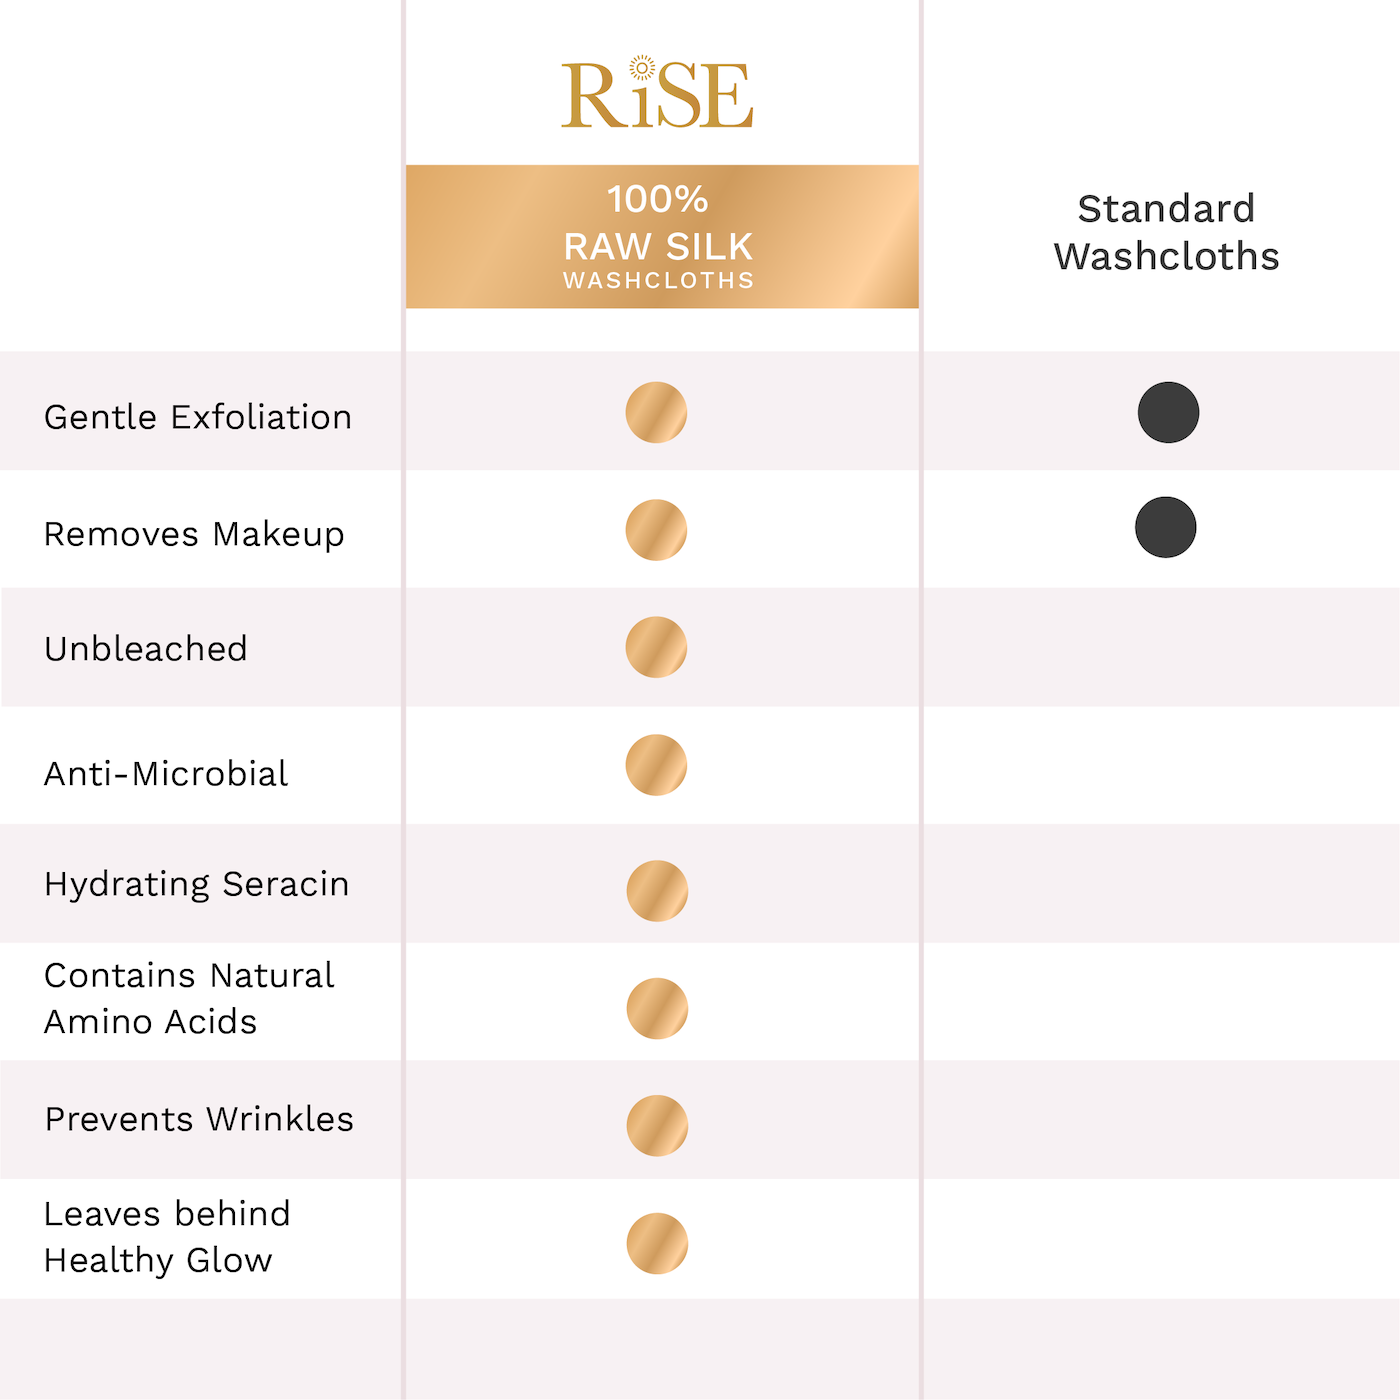 Comparison chart of raw silk versus standard washcloths